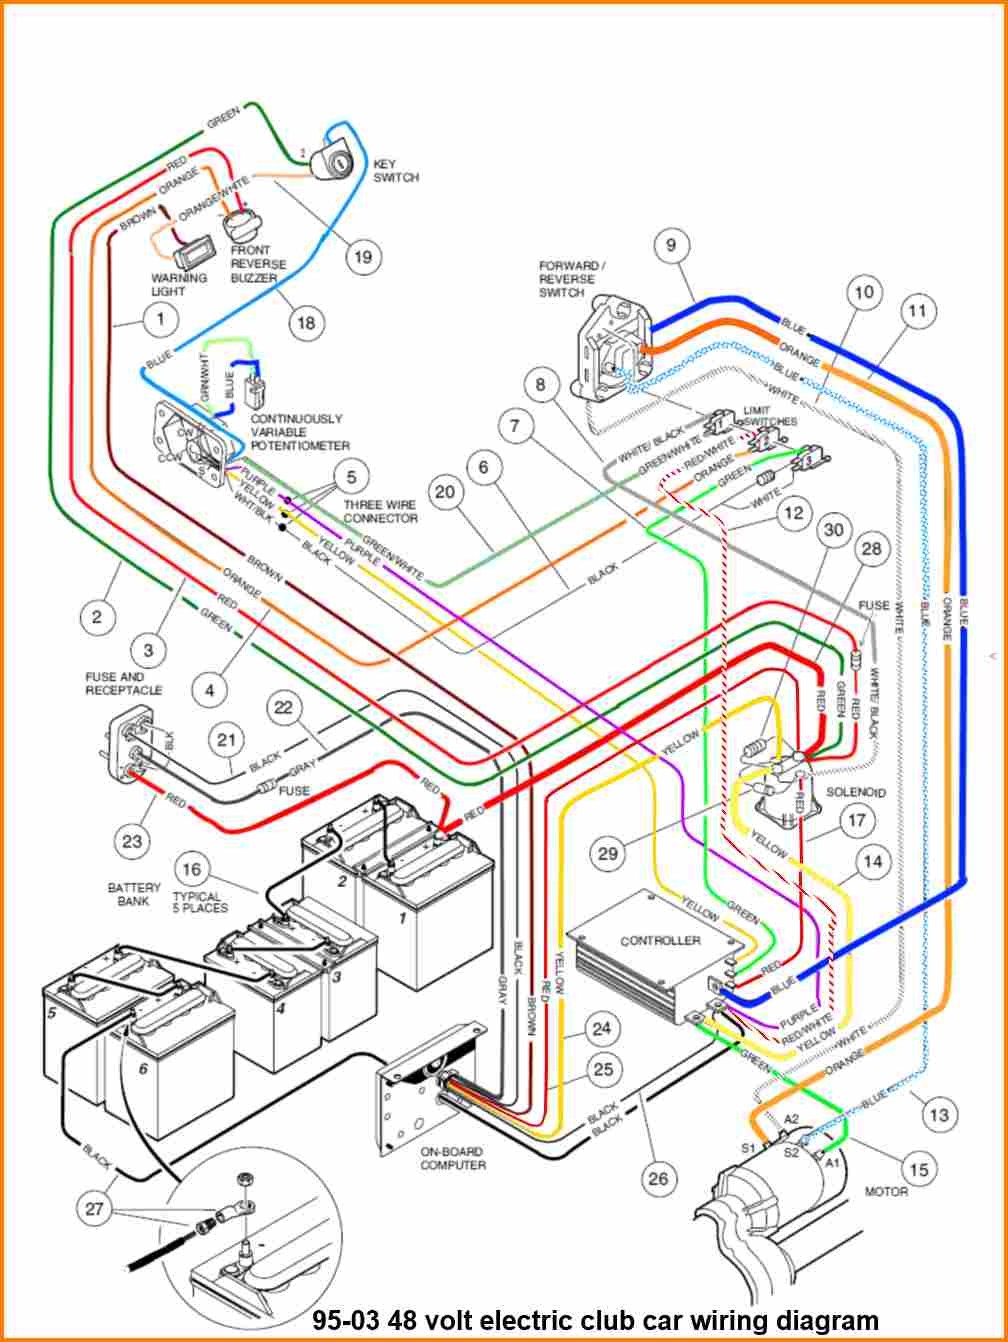 86 club car golf cart battery wiring diagram smart wiring diagrams u2022 rh emgsolutions co 48 Volt Club Car Wiring Diagram Club Car Battery Wiring Diagram